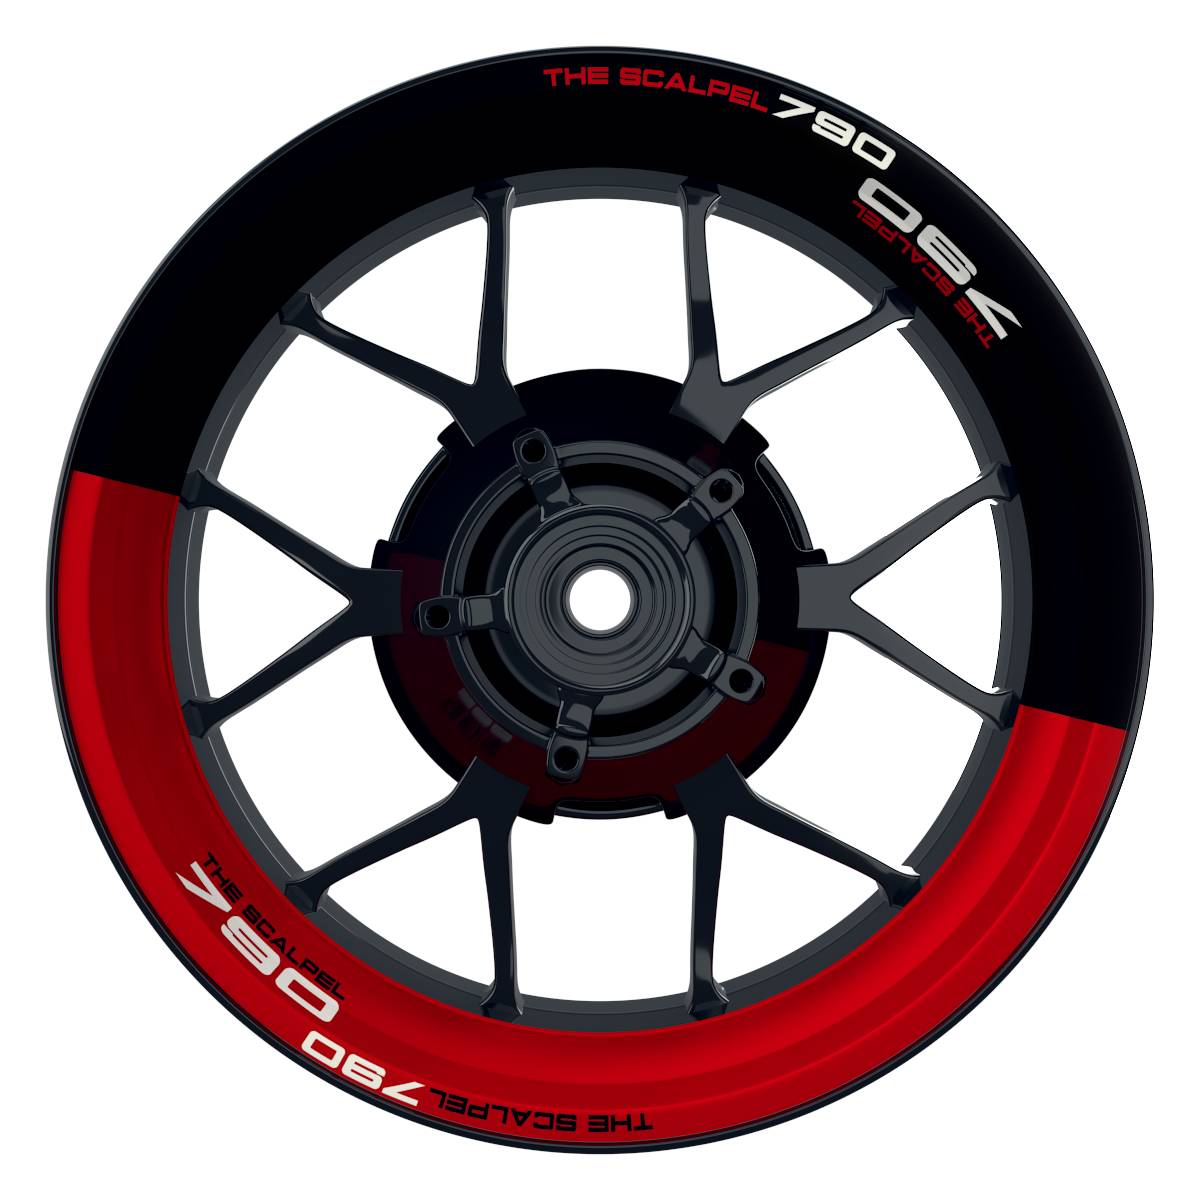 THE SCALPEL 790 halb halb schwarz rot Wheelsticker Felgenaufkleber